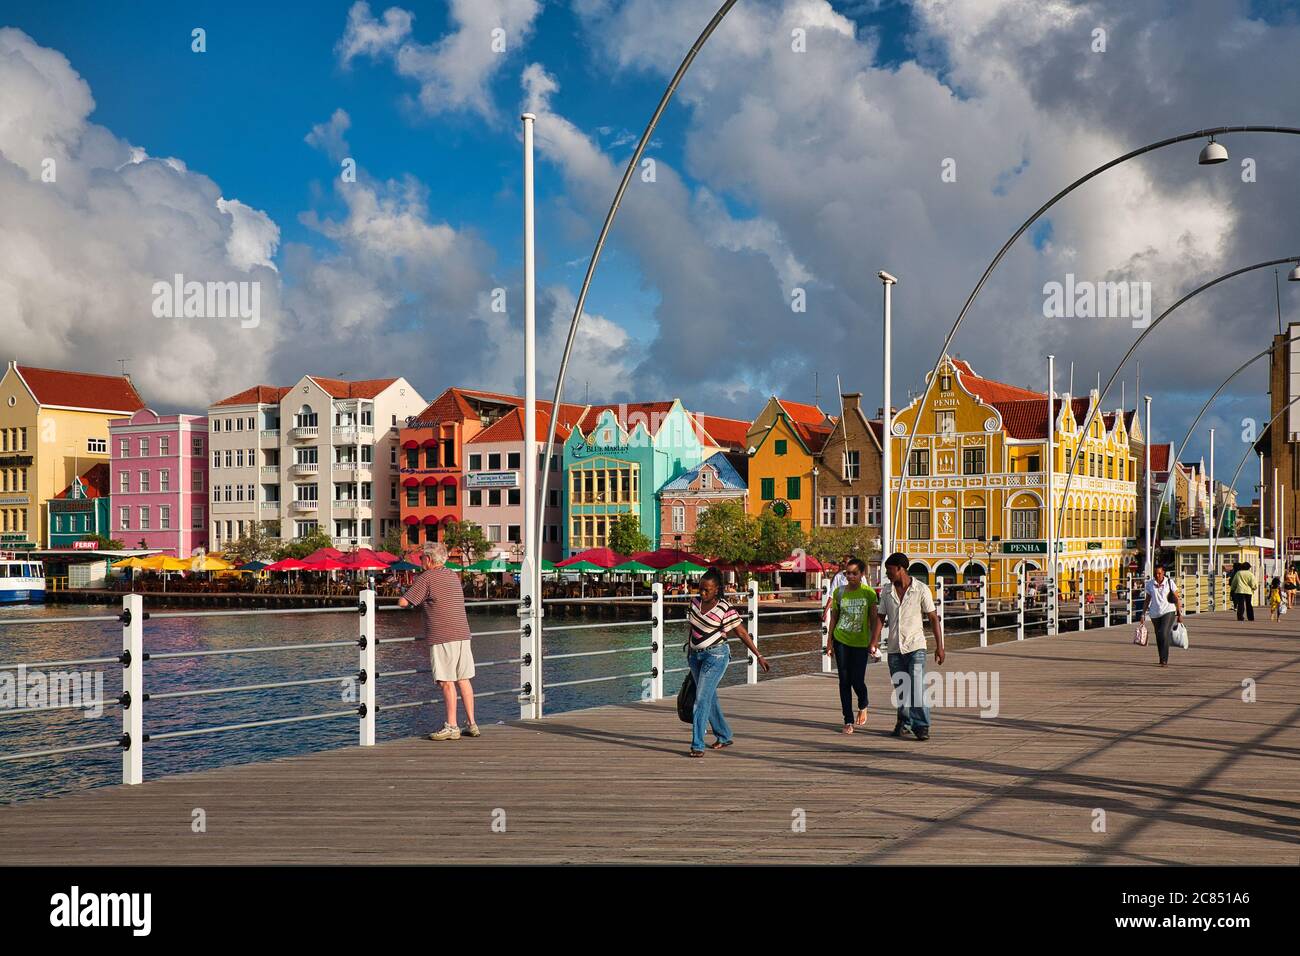 Menschen, die über die Queen Emma Brücke mit typisch holländischen Gebäuden im Hintergrund, Willemstat, Curacao, Karibik, West Indies Stockfoto